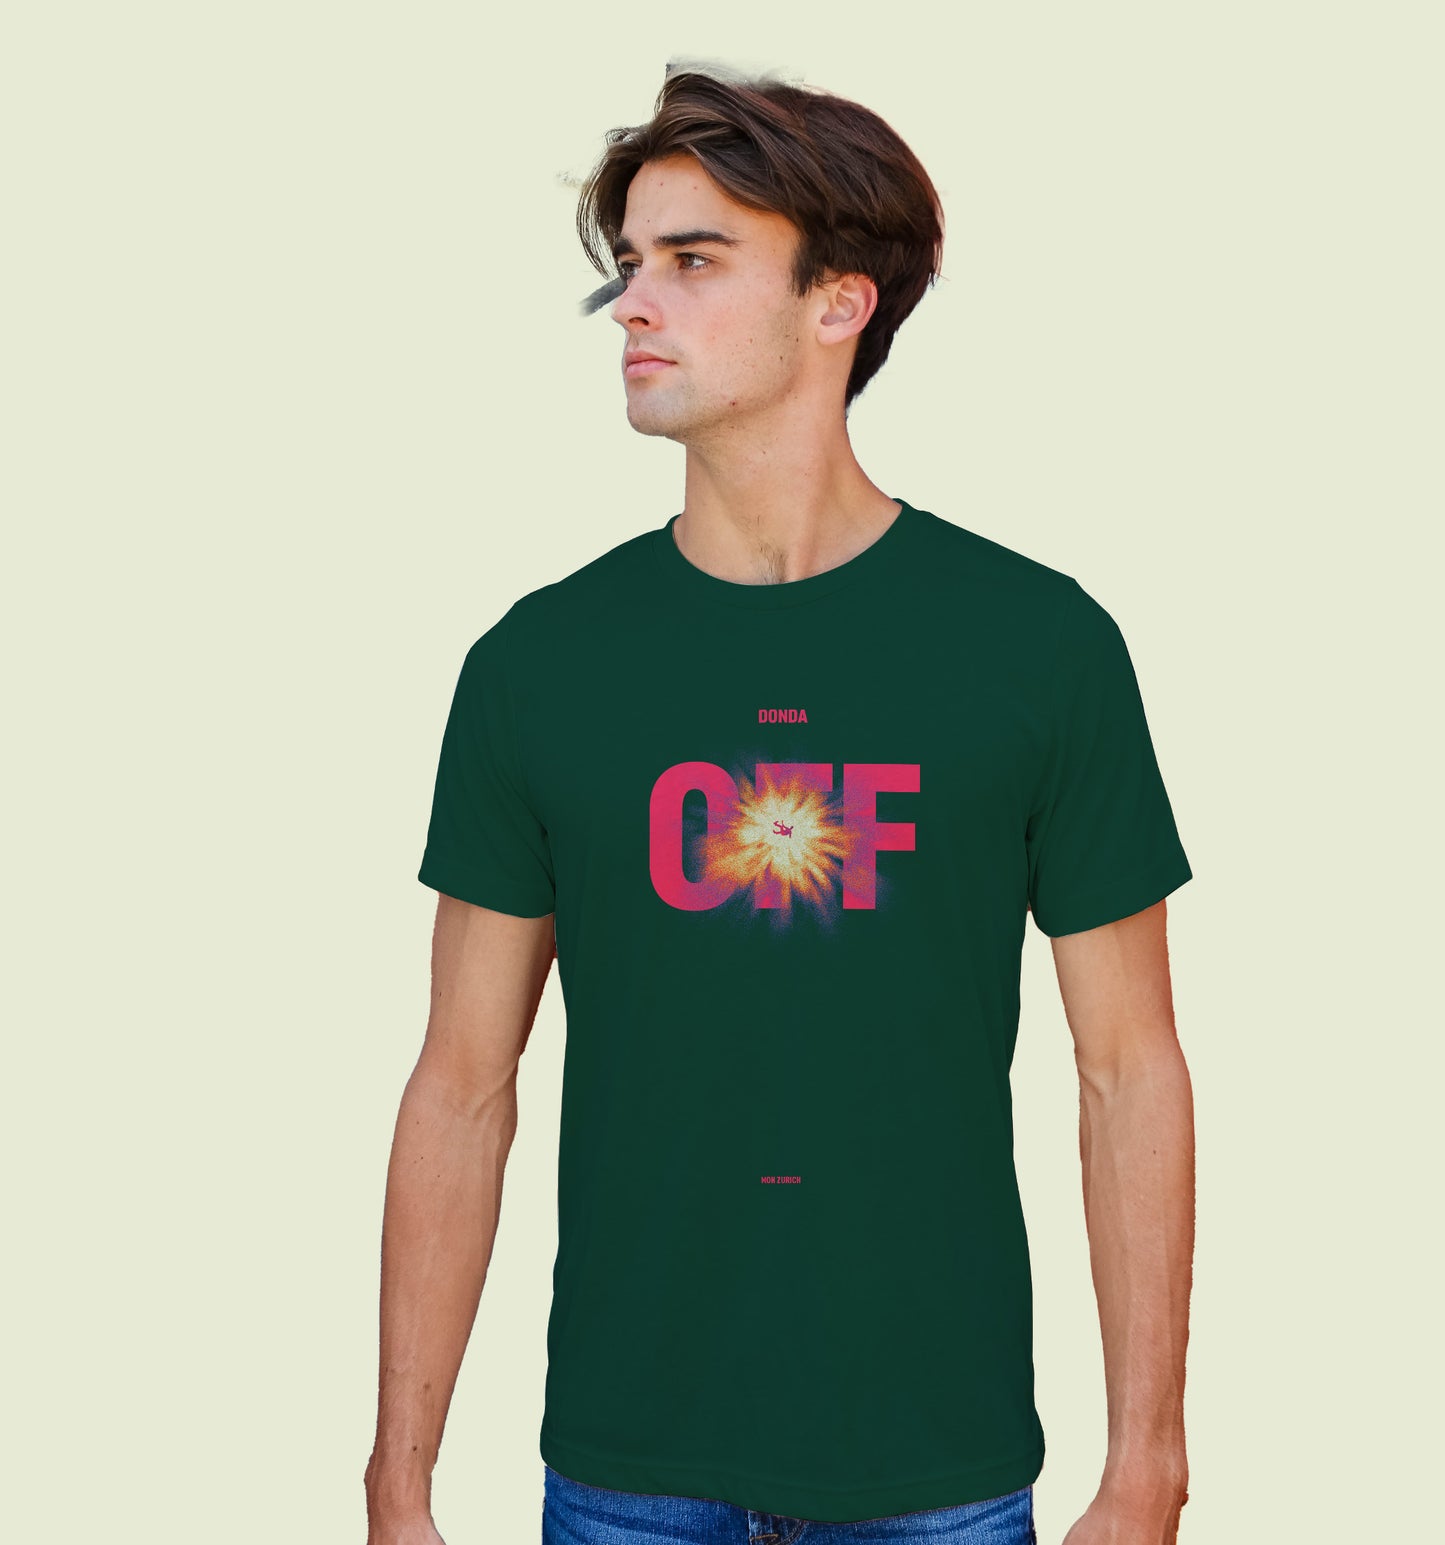 OFF (DONDA) (KANYE) T-shirt in Dark - Mon Zurich Originals